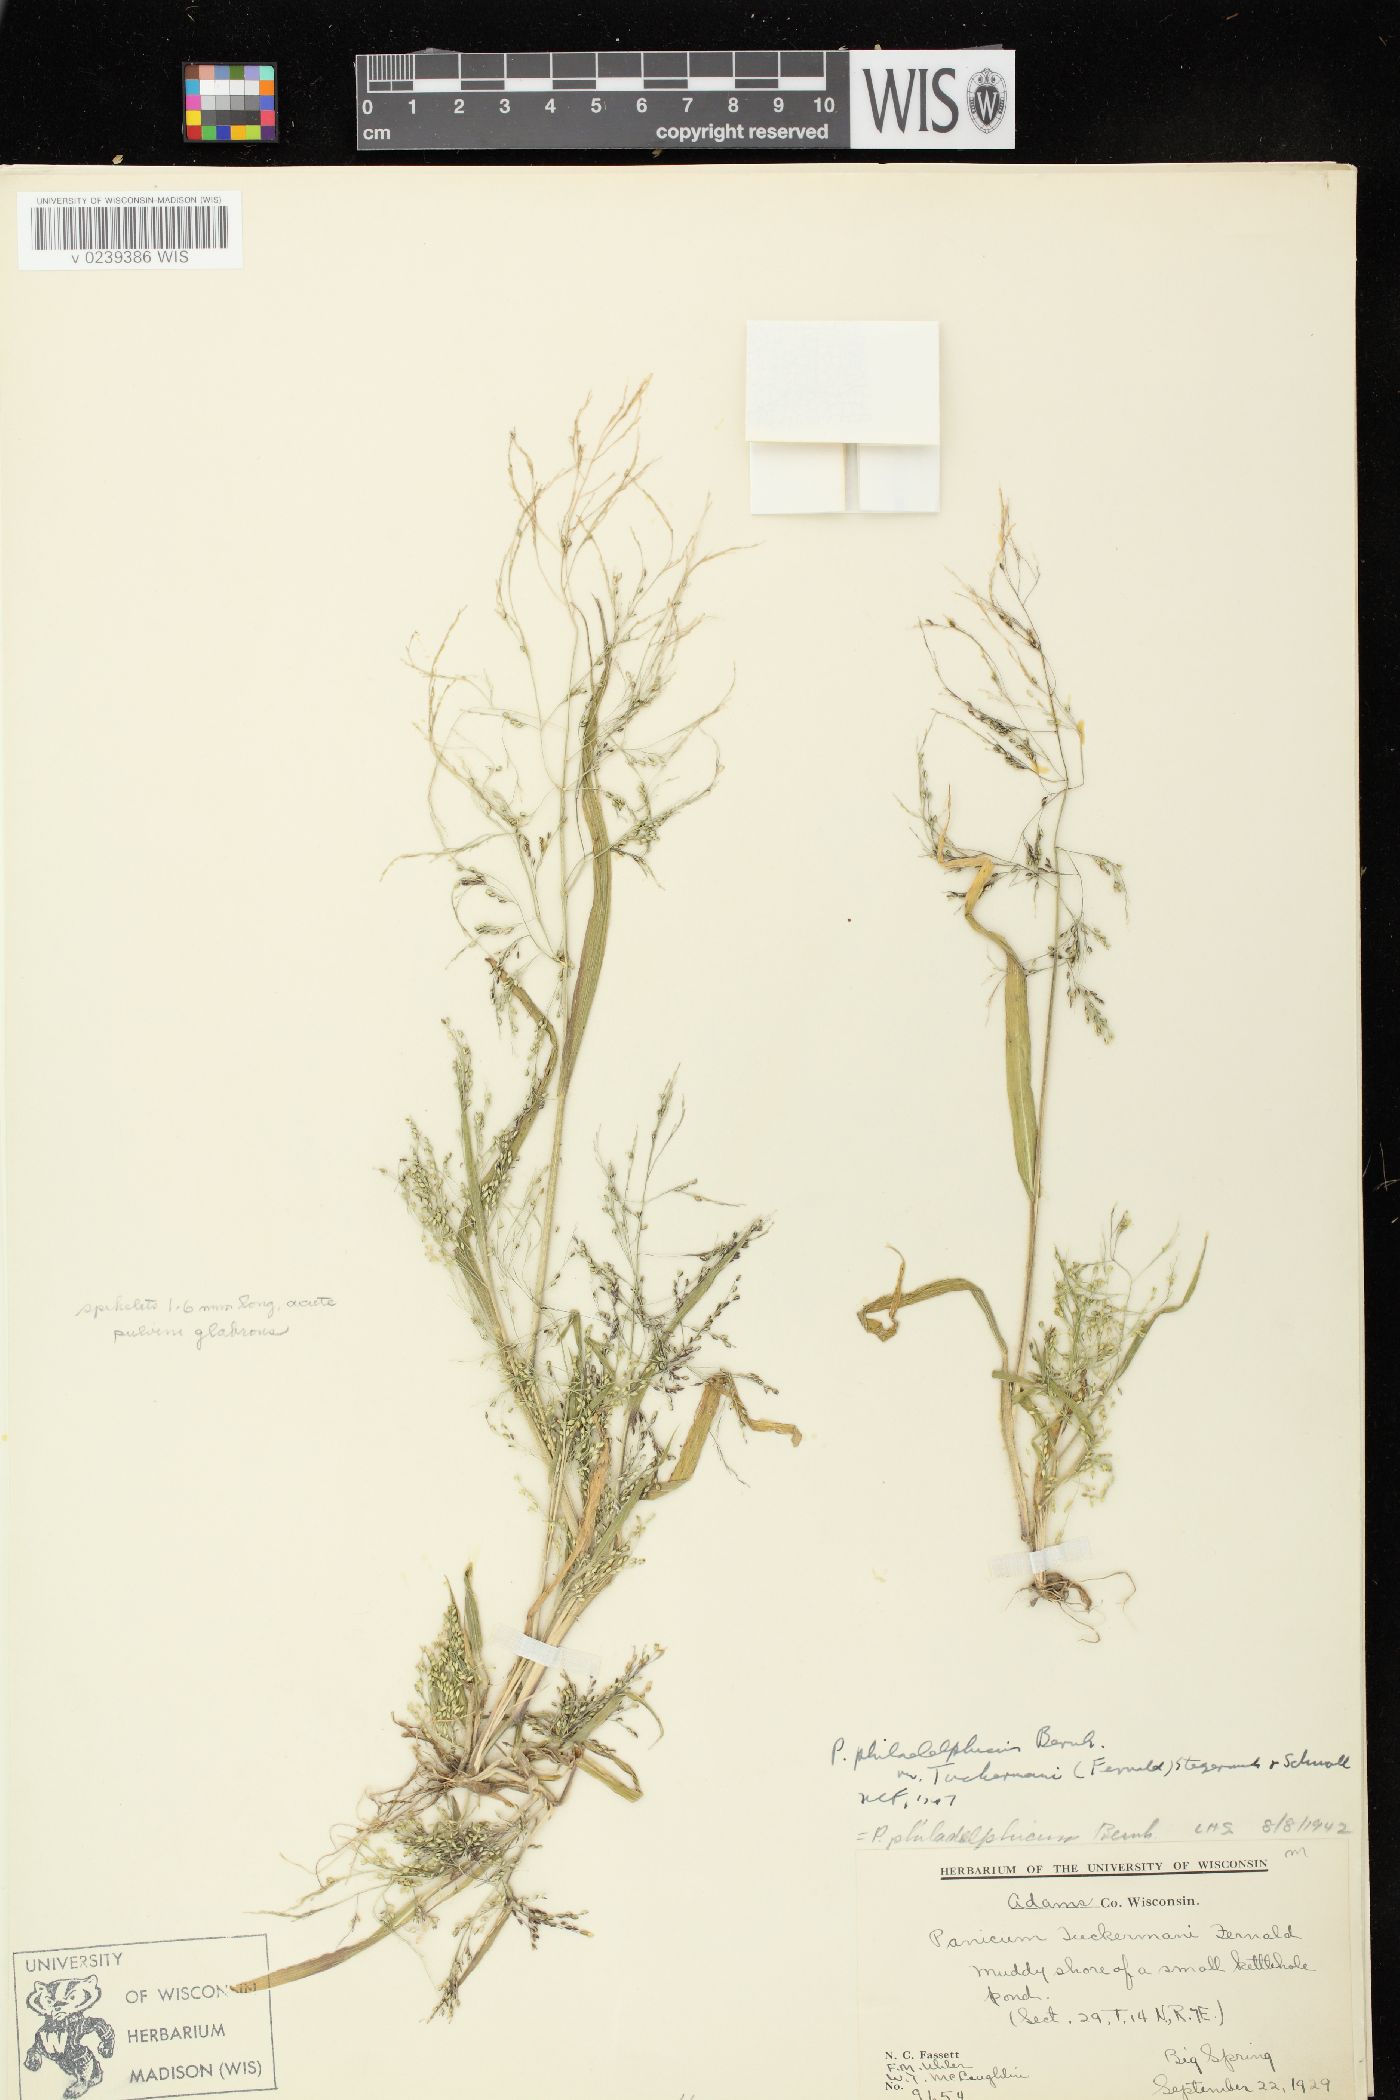 Panicum philadelphicum subsp. philadelphicum image